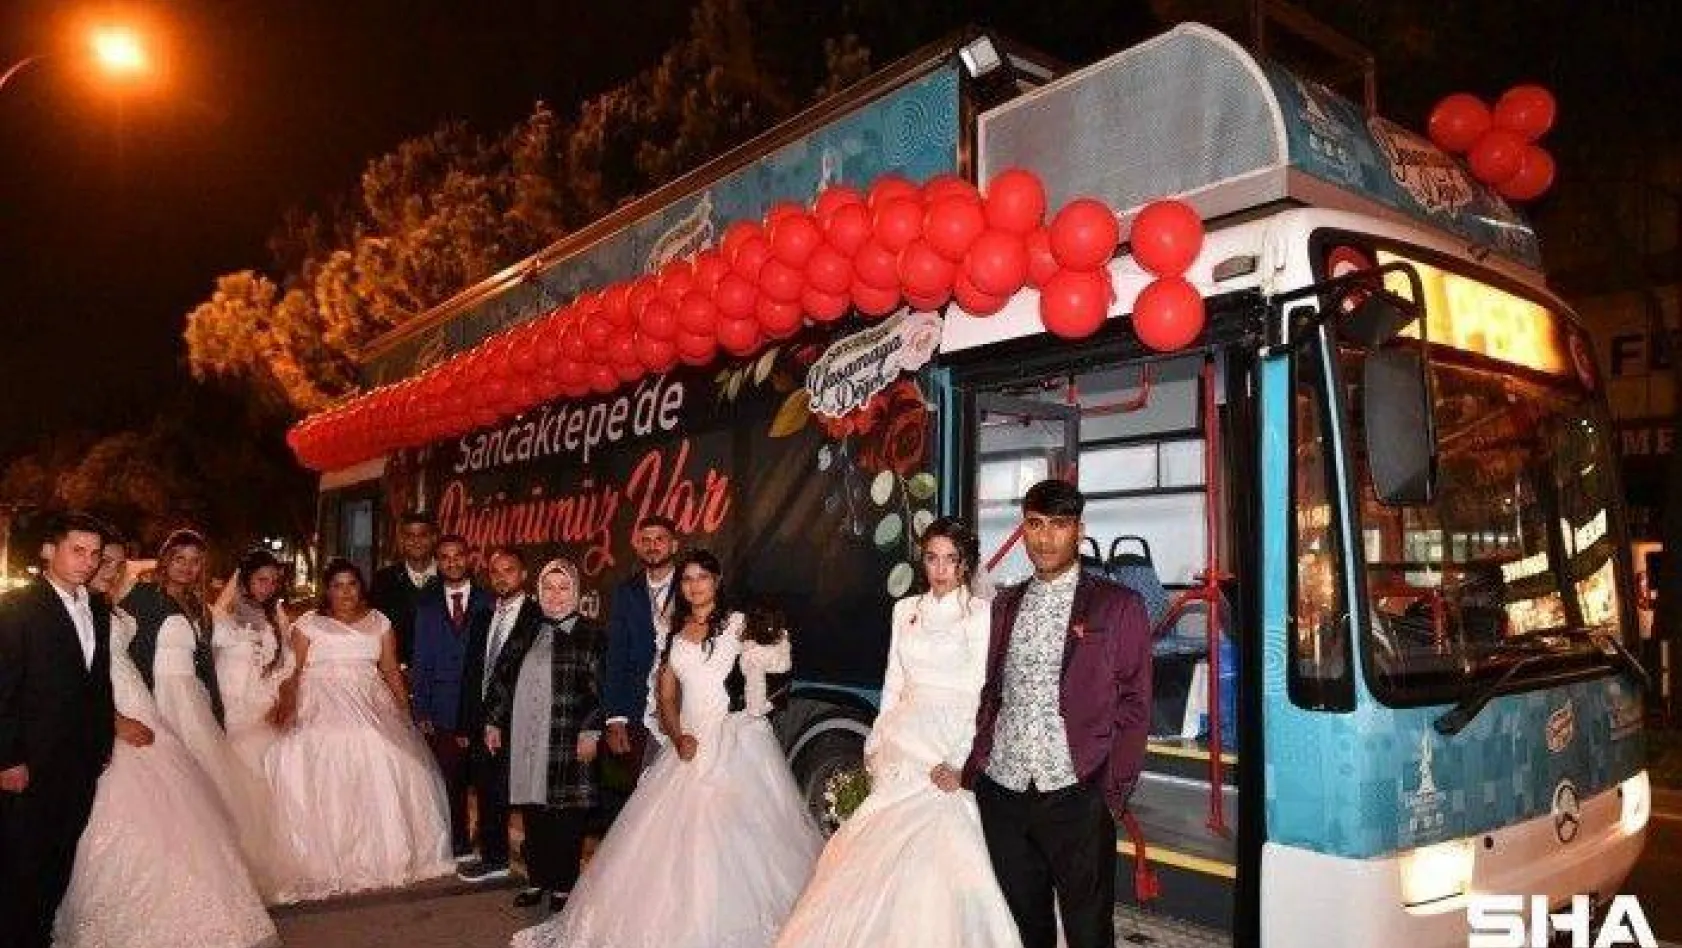 Sancaktepe'de Roman çiftler toplu nikah töreniyle dünya evine girdi